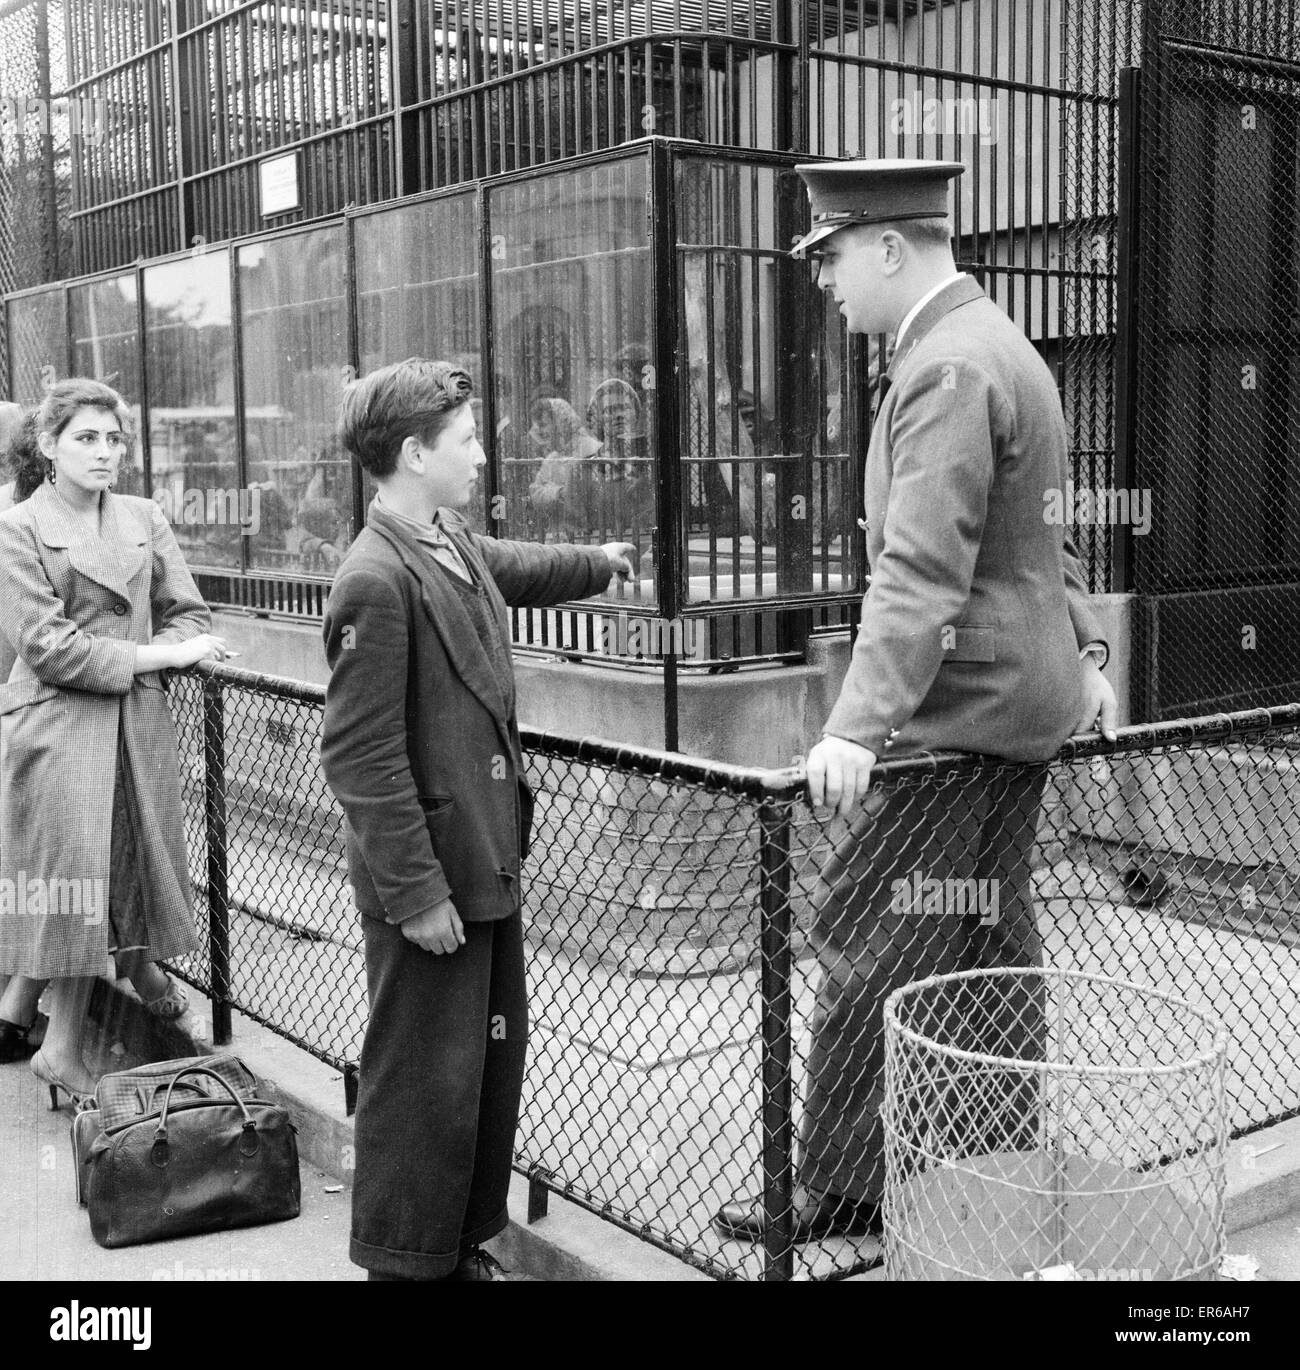 Ron Smith, Zoo Keeper, parlant avec Clifford Preece 15, qui a été témoin d'un incident avec Guy le gorille au Zoo de Londres, que l'on voit à l'extérieur de la cage du Gorille, le 18 juin 1956. Banque D'Images